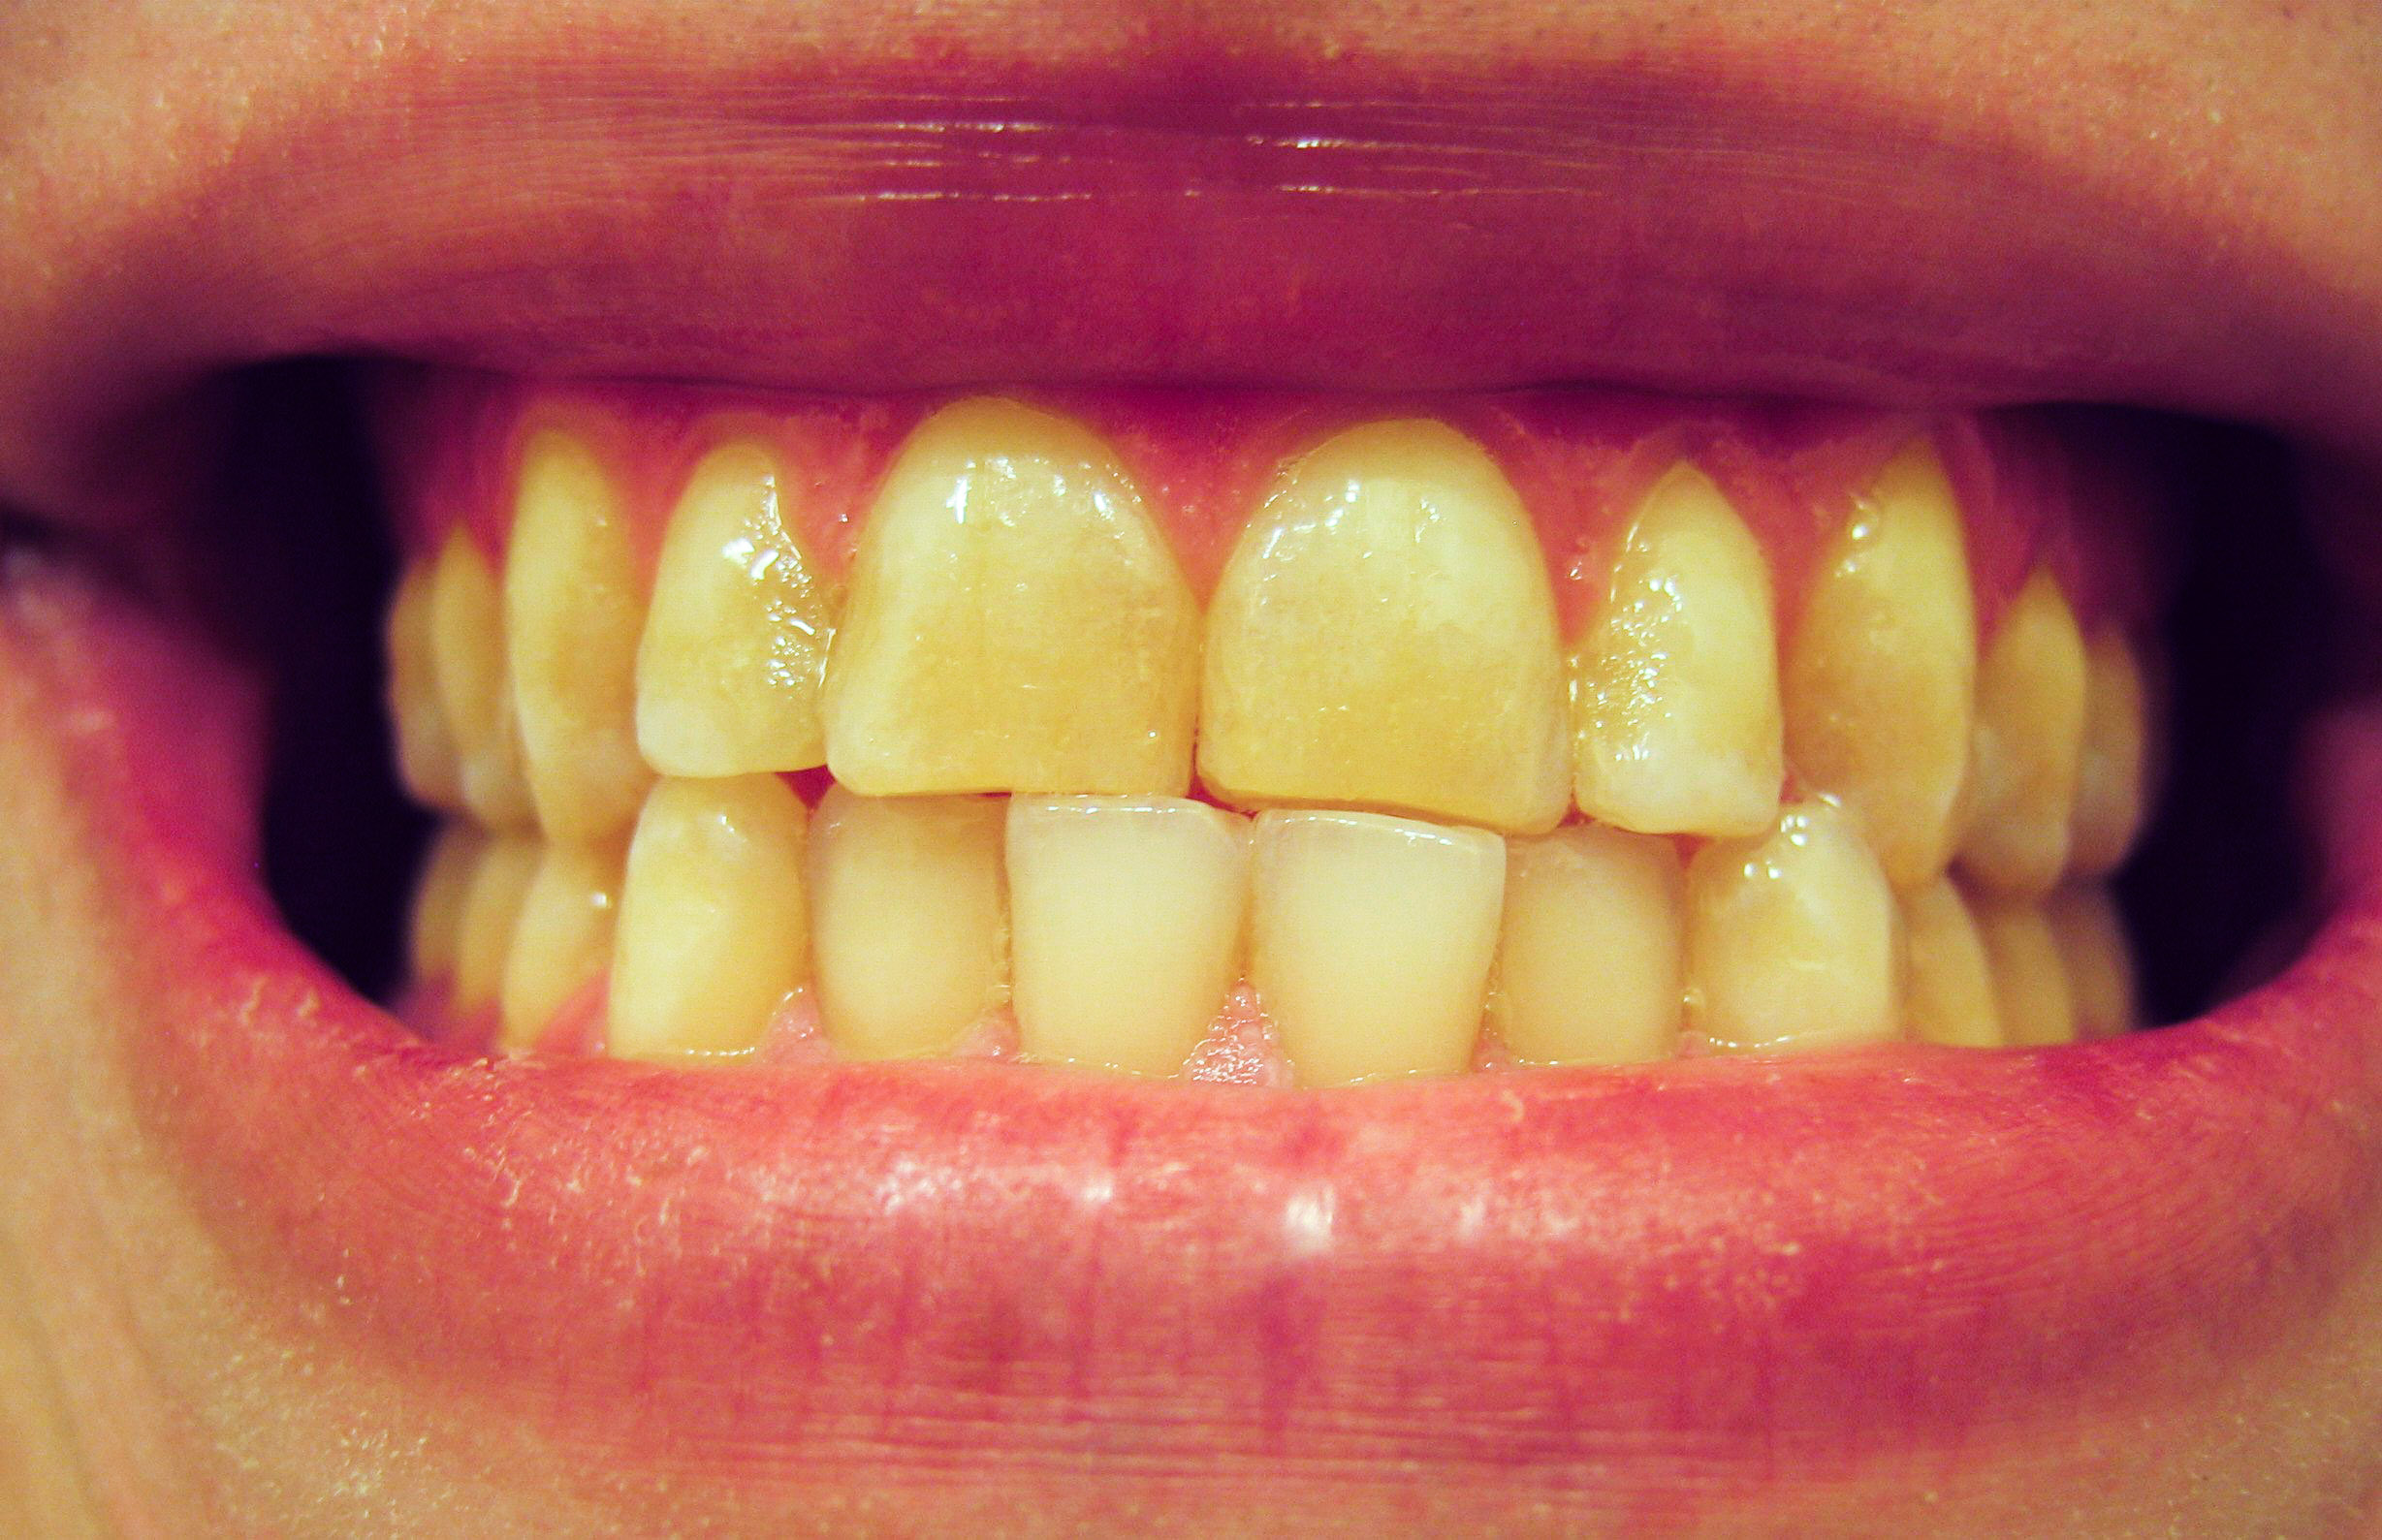 фото гниющих зубов